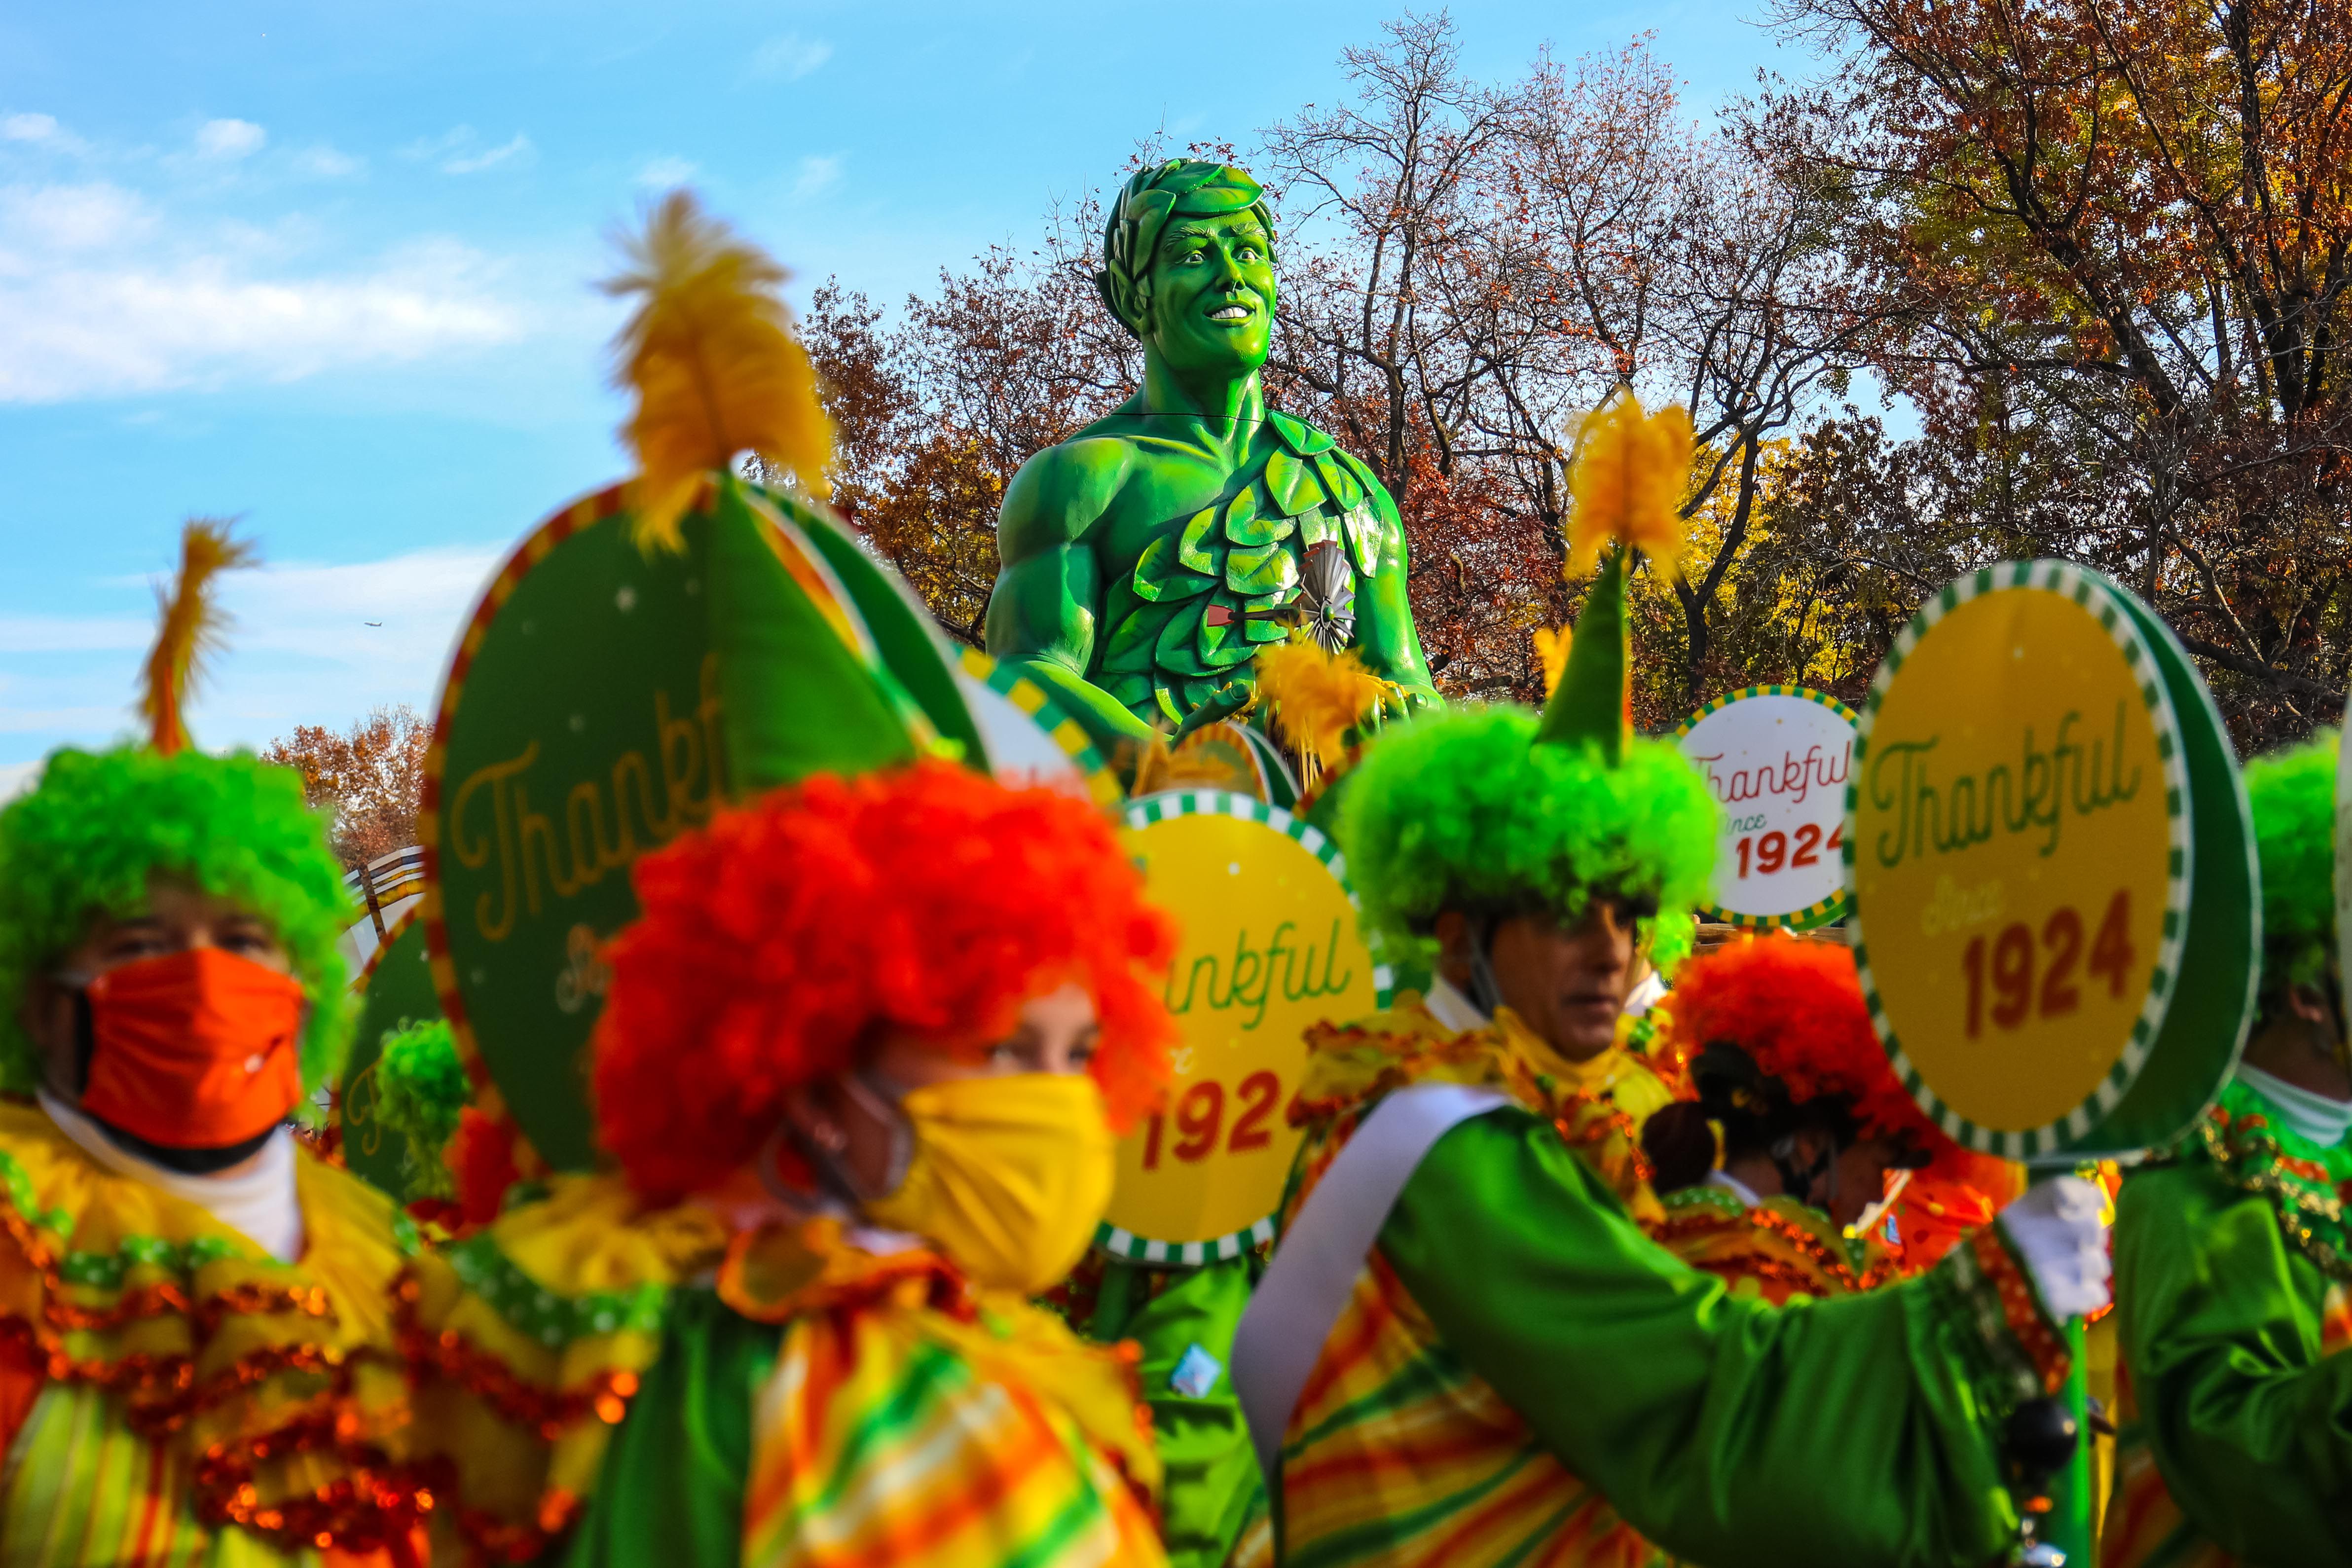 GALERÍA: Las mejores fotos del Desfile de Día de Acción de Gracias de Macy's